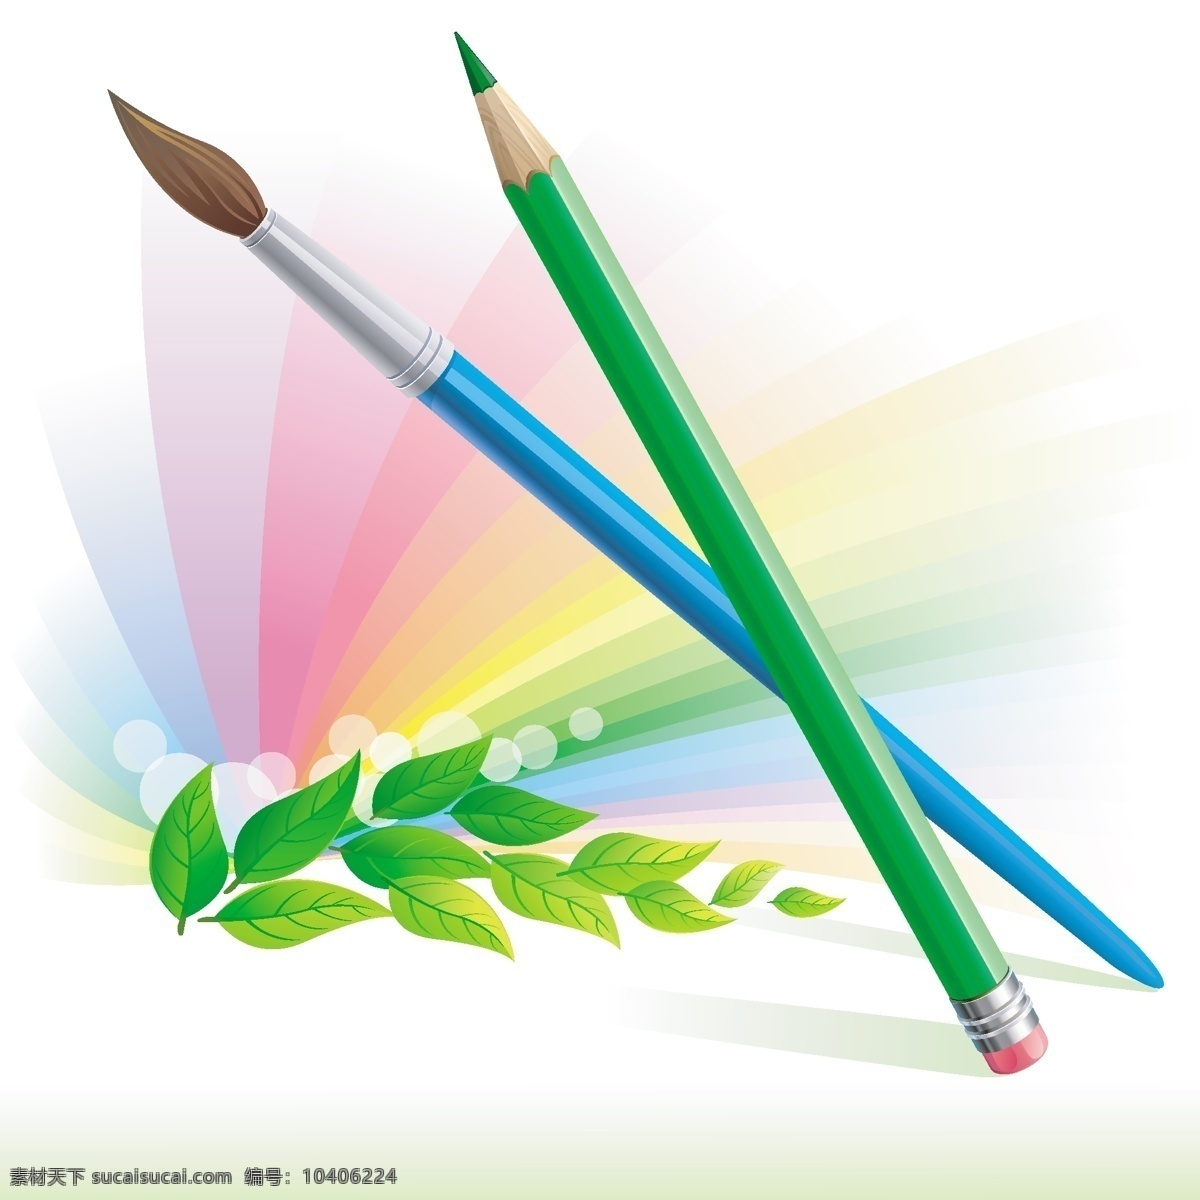 画笔 背景图片 背景 画笔背景 美术绘画 生活百科 水彩 水粉 文化艺术 学习用品 矢量